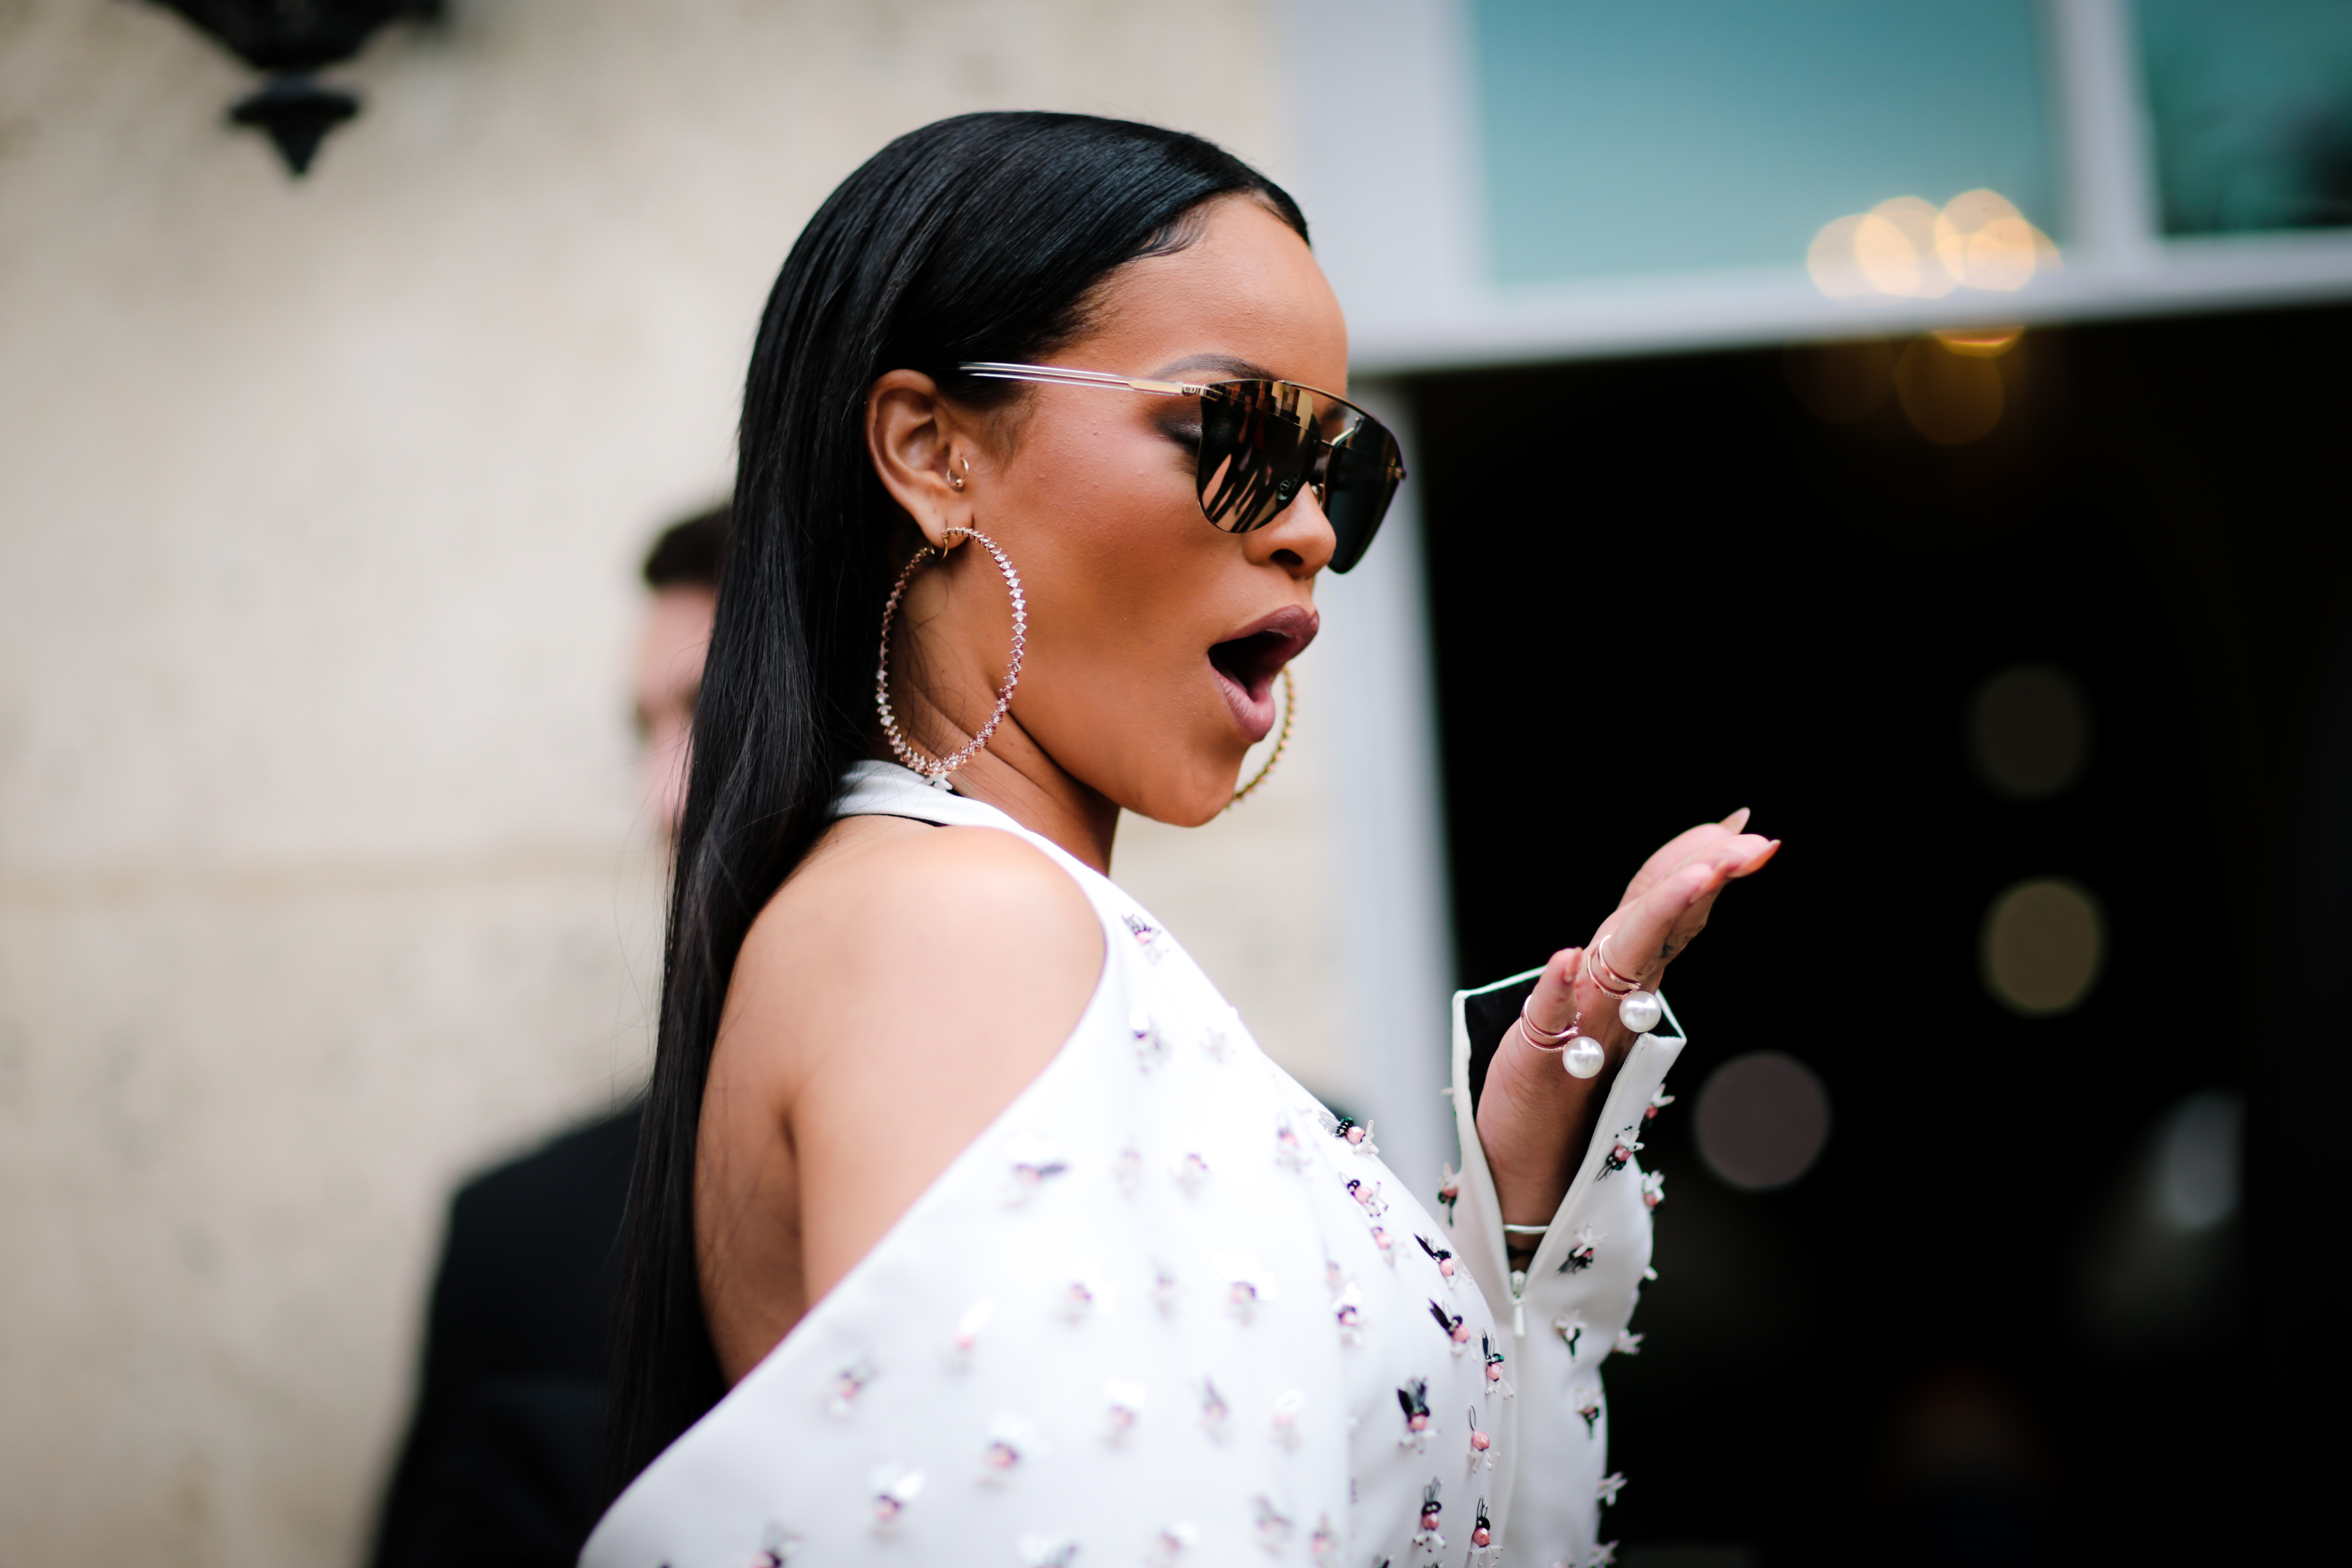 Rihanna's Fenty Beauty: A Road To Diversity - Advice from